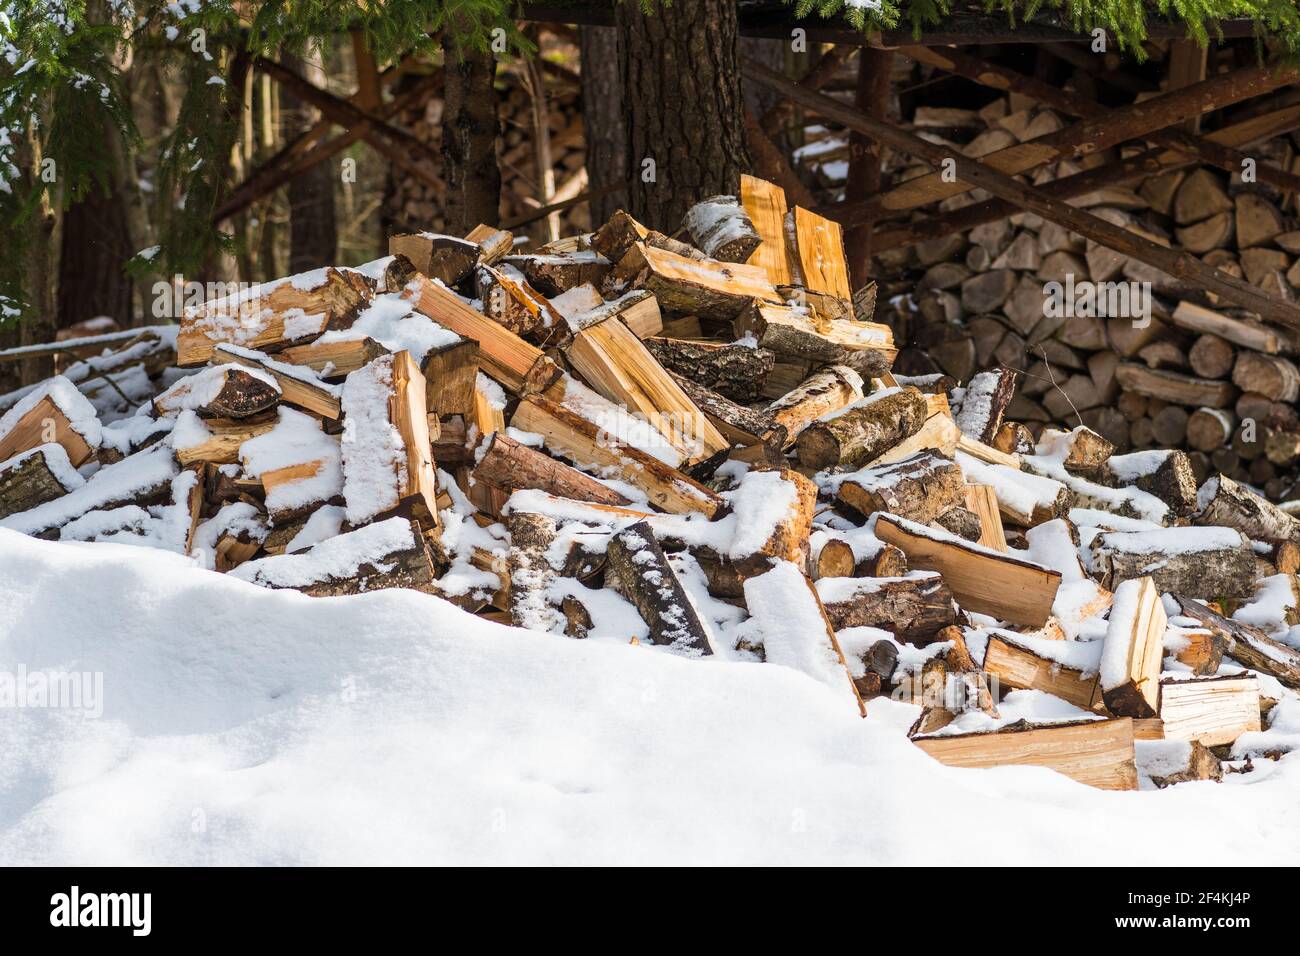 Pile ou pile composée de blocs, morceaux ou billes de bois en hiver ou au printemps avec de la neige. Gerbage de bois pour le séchage et le stockage Banque D'Images